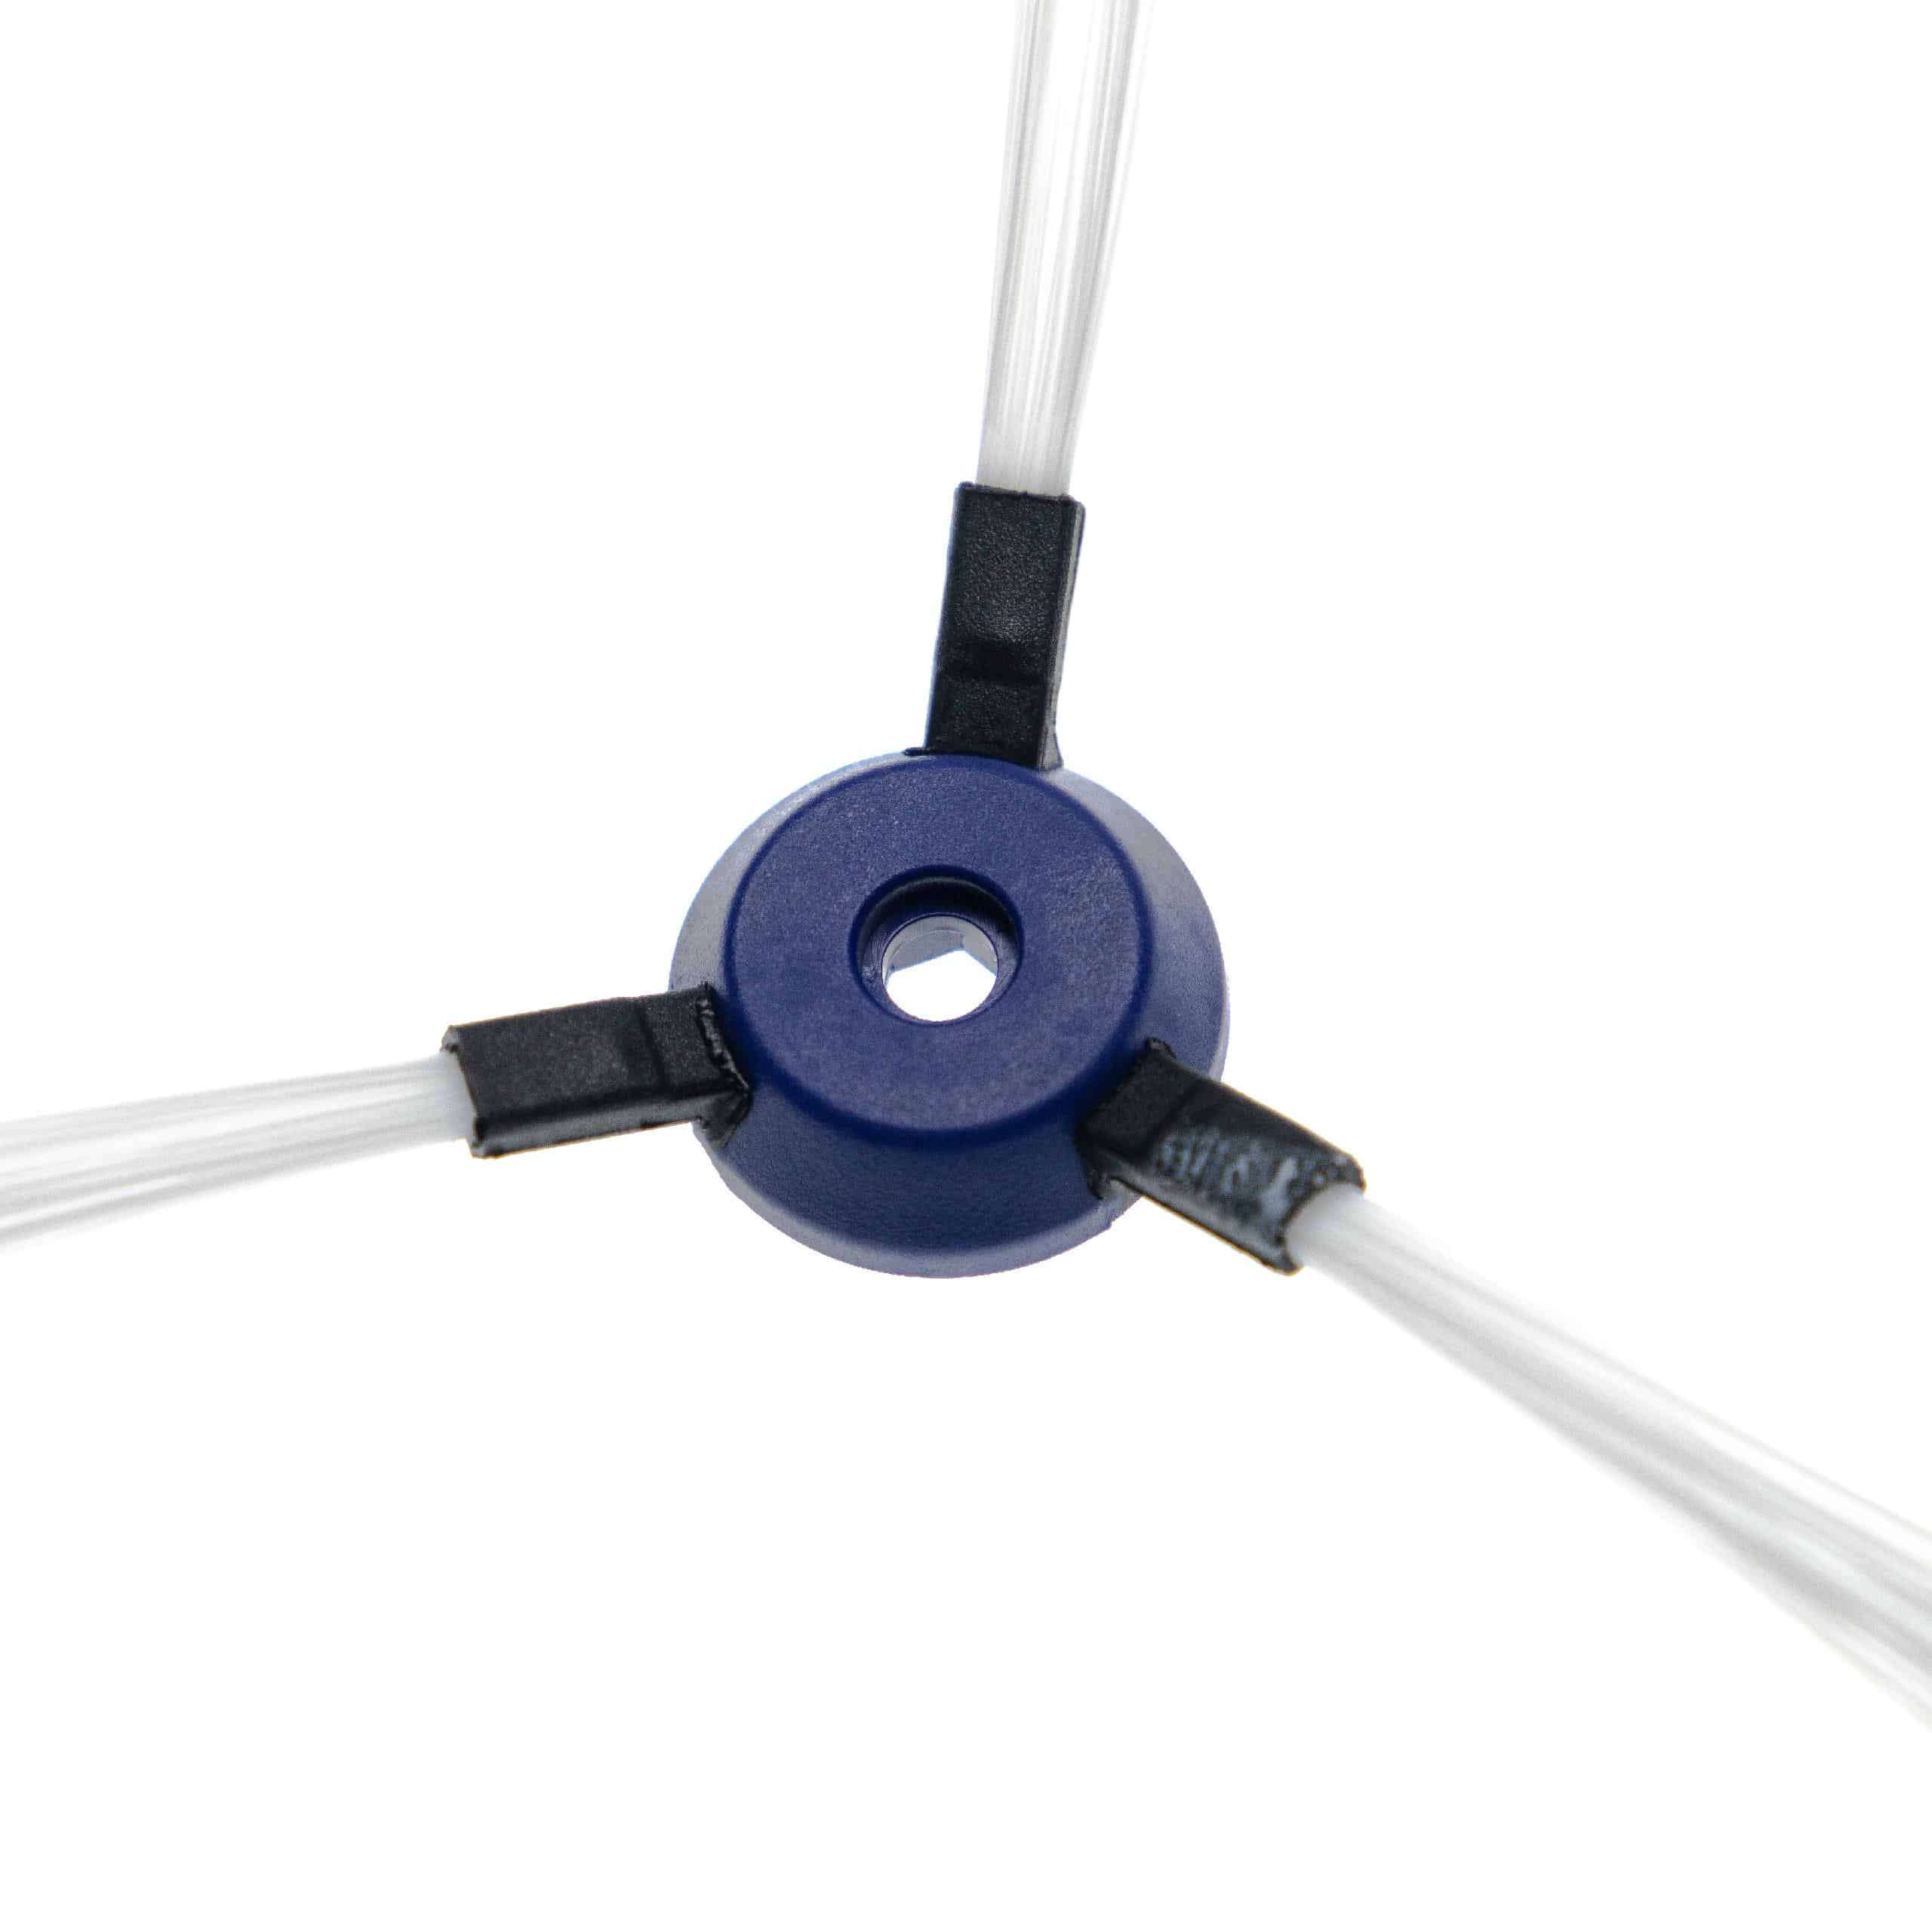 2x Cepillo lateral 3 brazos para robot aspirador Rowenta Smart Force - Set de cepillos negro / blanco / azul